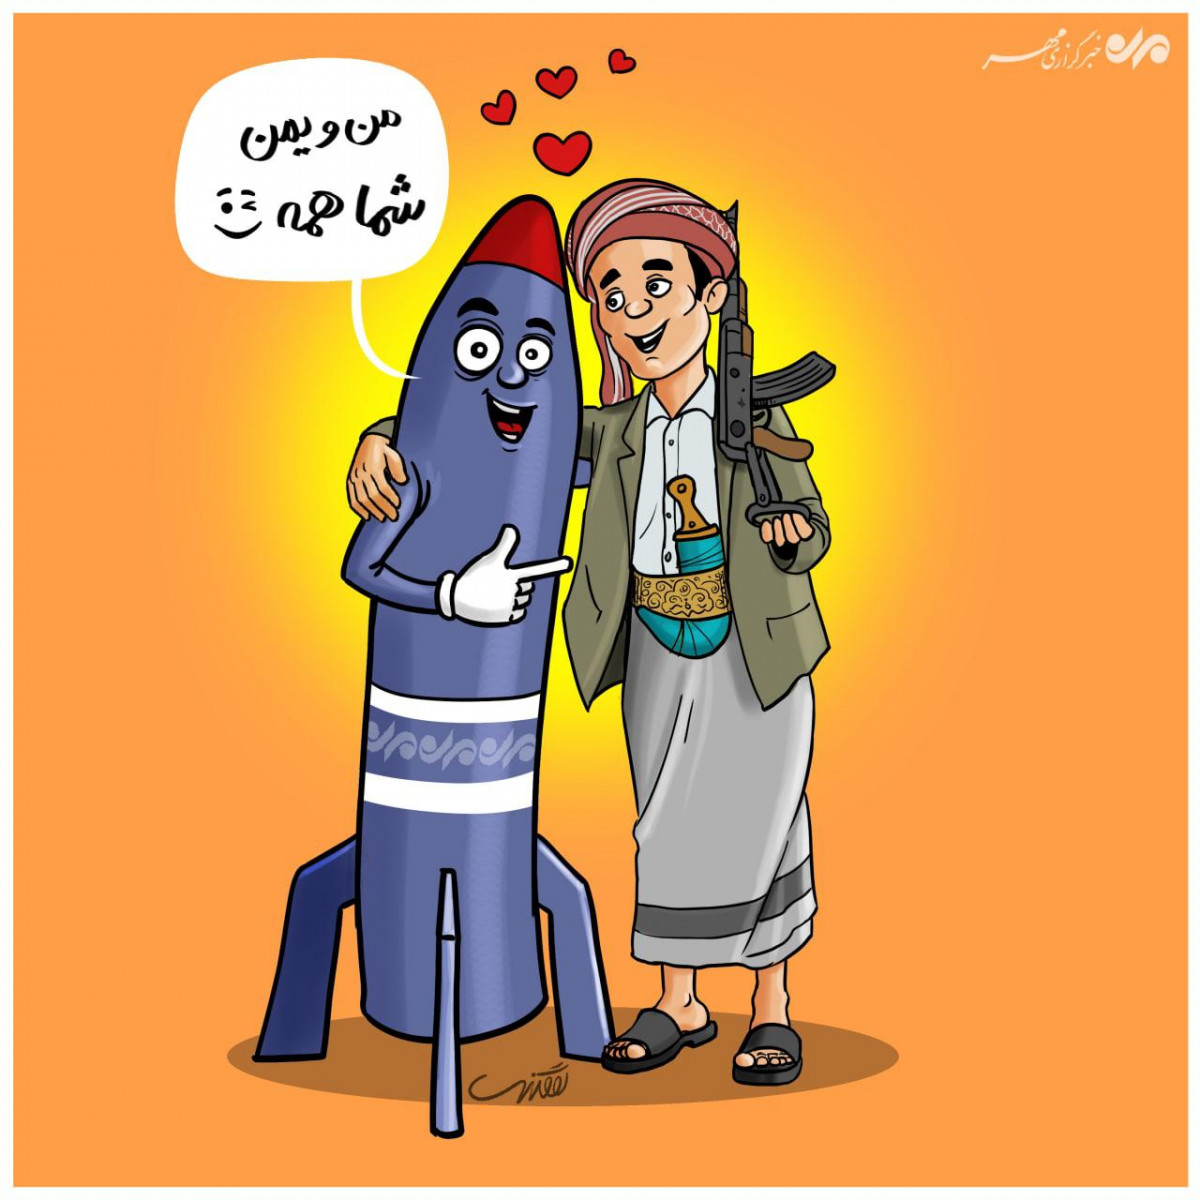 کاریکاتور: من و یمن شما همه